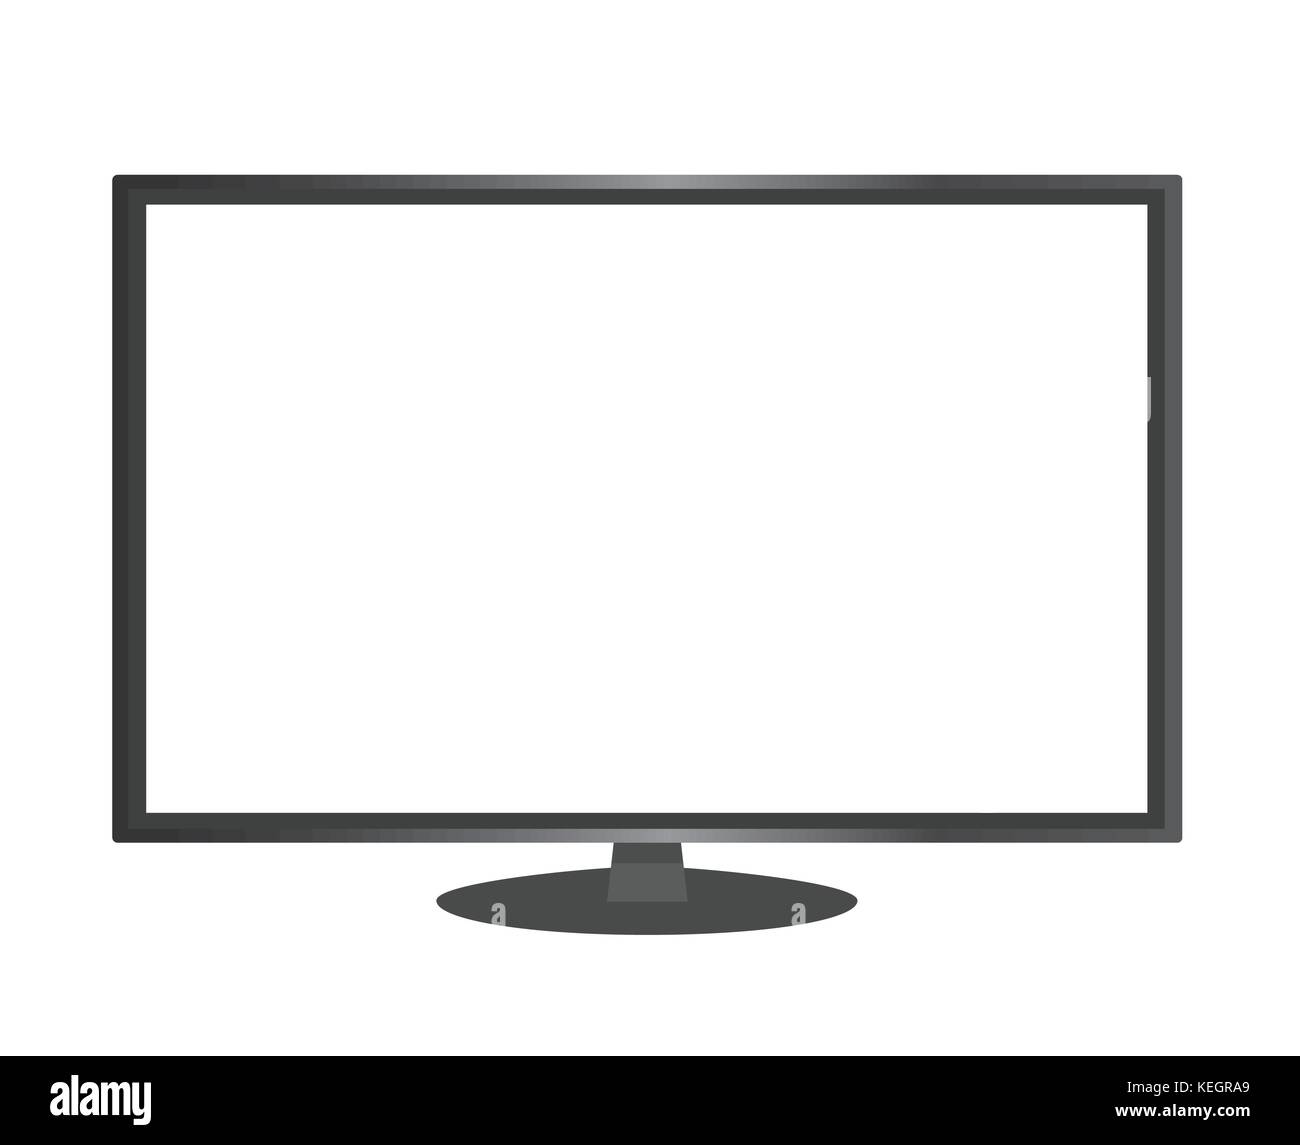 Los aislados de vectores de color negro con relación de aspecto 16:9 de pantalla ancha del monitor del ordenador con la pantalla en blanco Ilustración del Vector